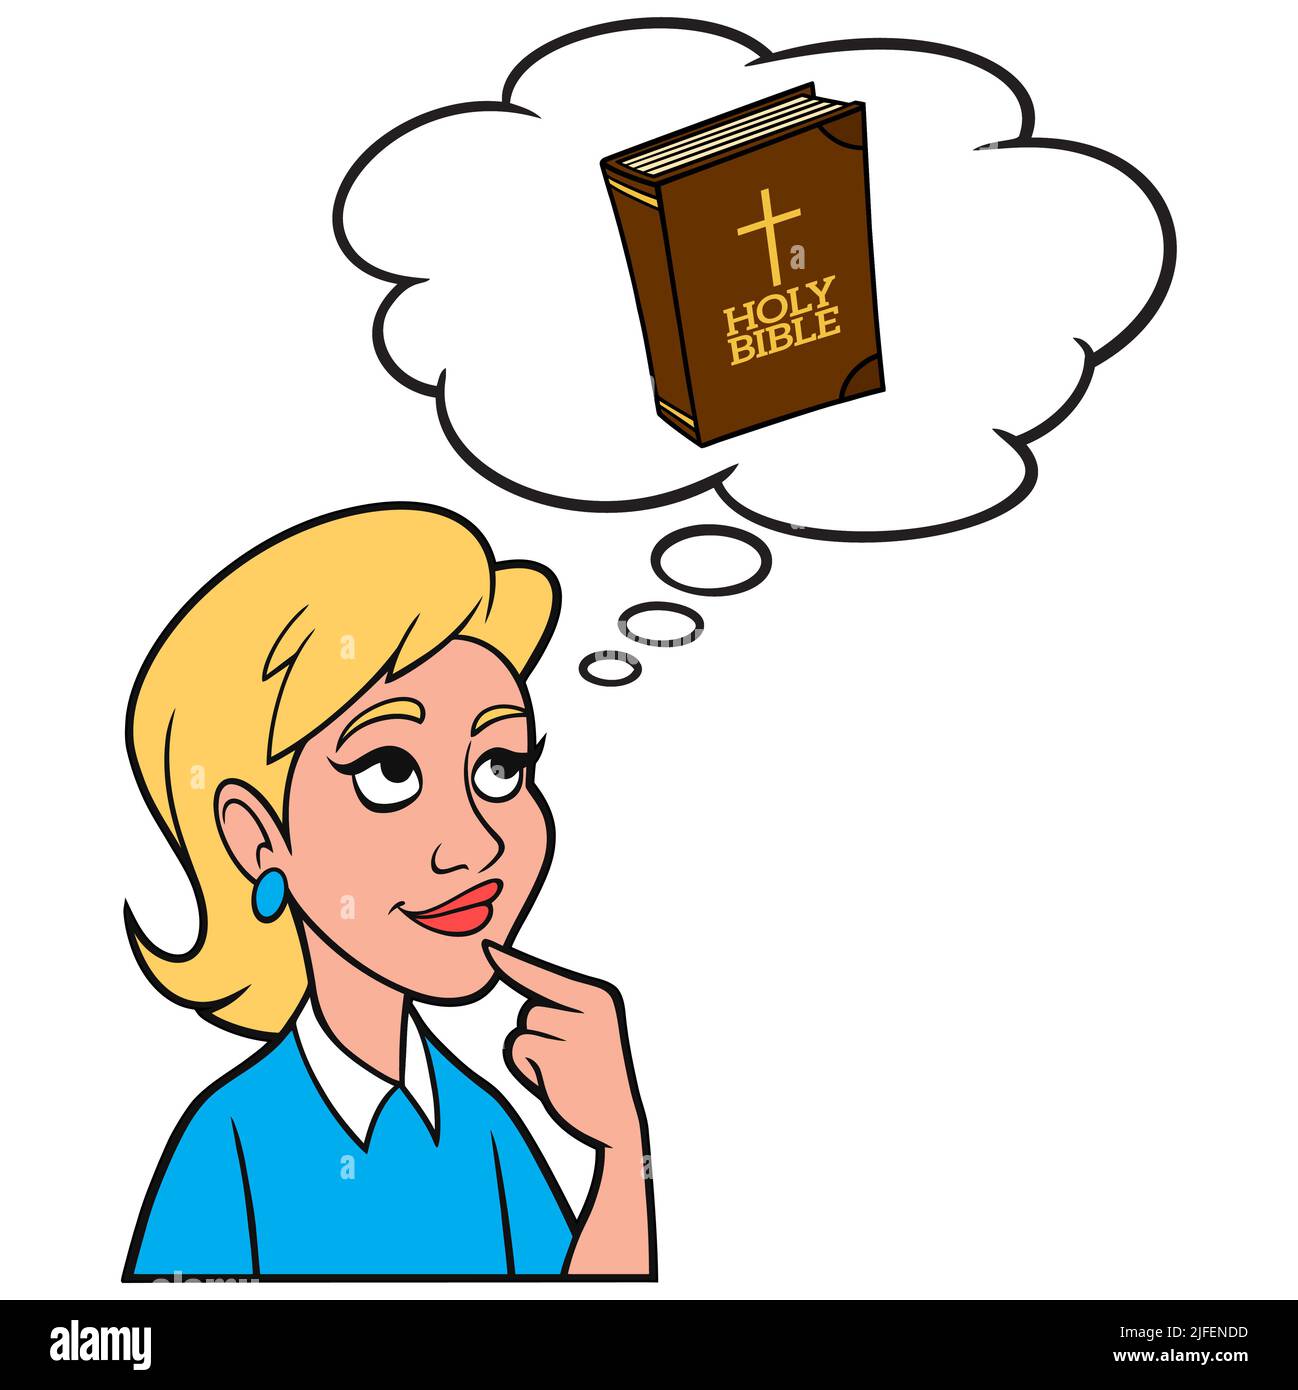 Ragazza che pensa a una Bibbia - Un'illustrazione cartoon di una ragazza che pensa a un versetto della Bibbia che aveva letto. Illustrazione Vettoriale